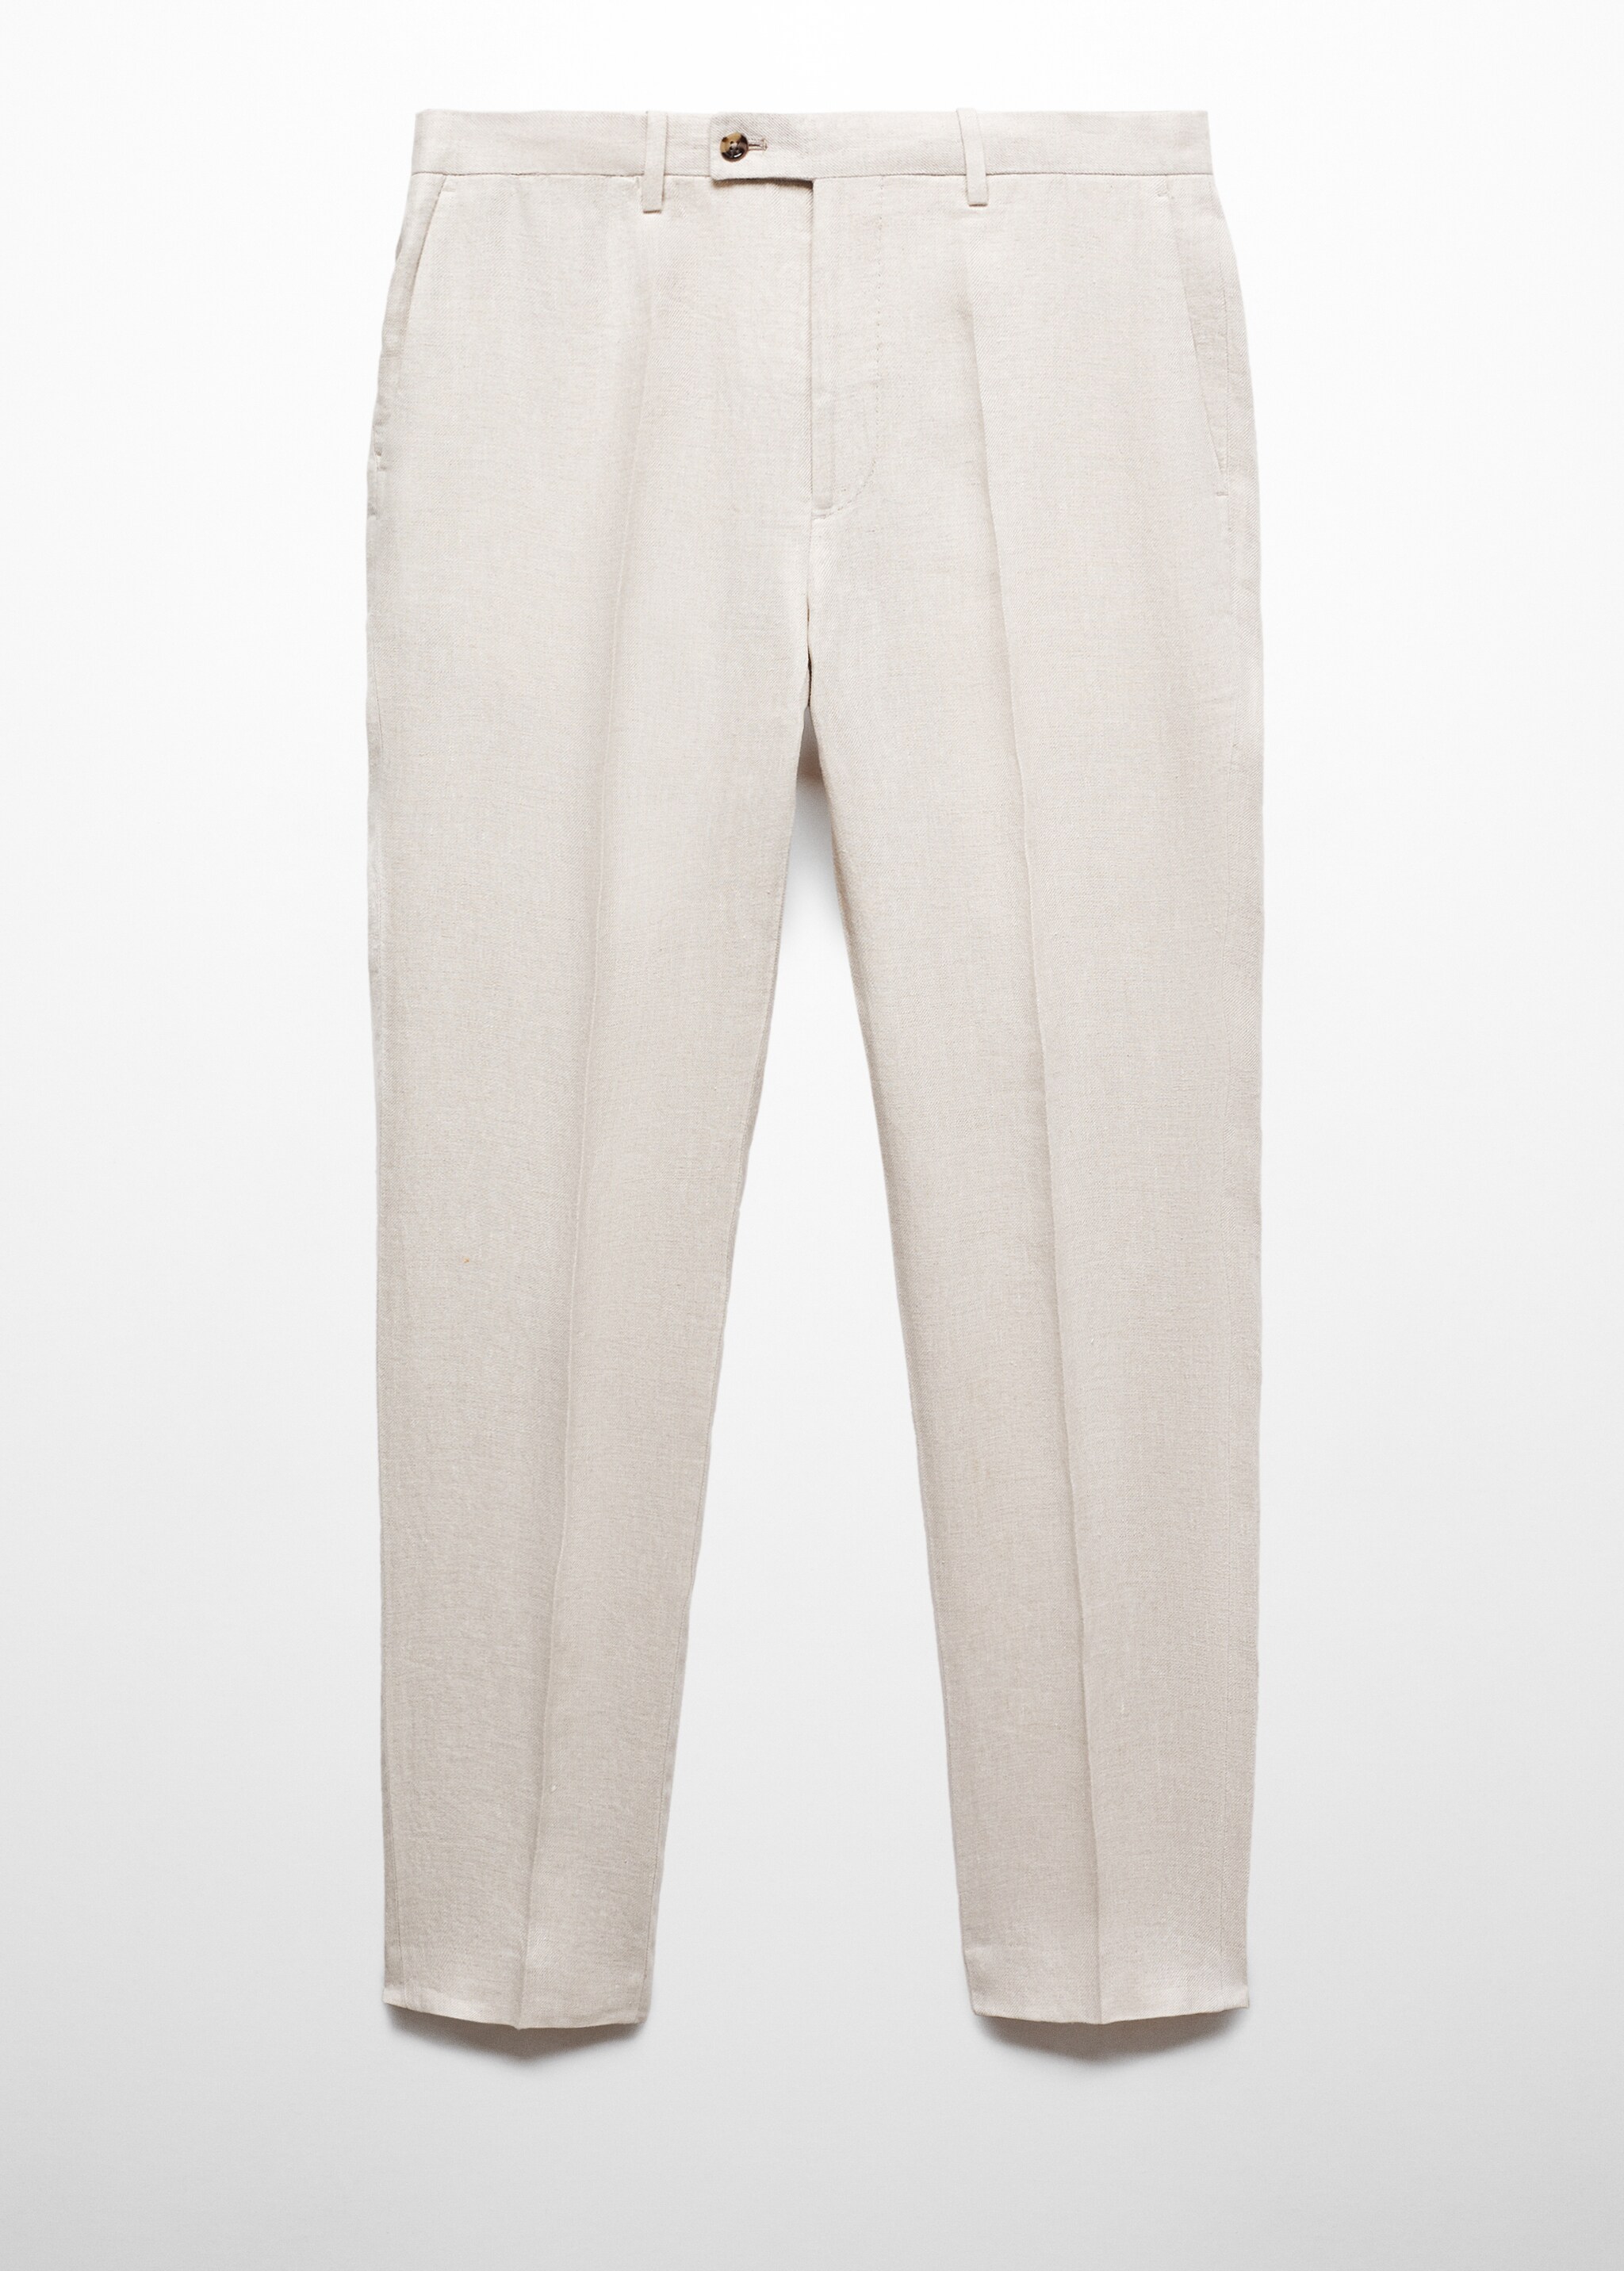 Pantaloni completo slim-fit 100% lino - Articolo senza modello